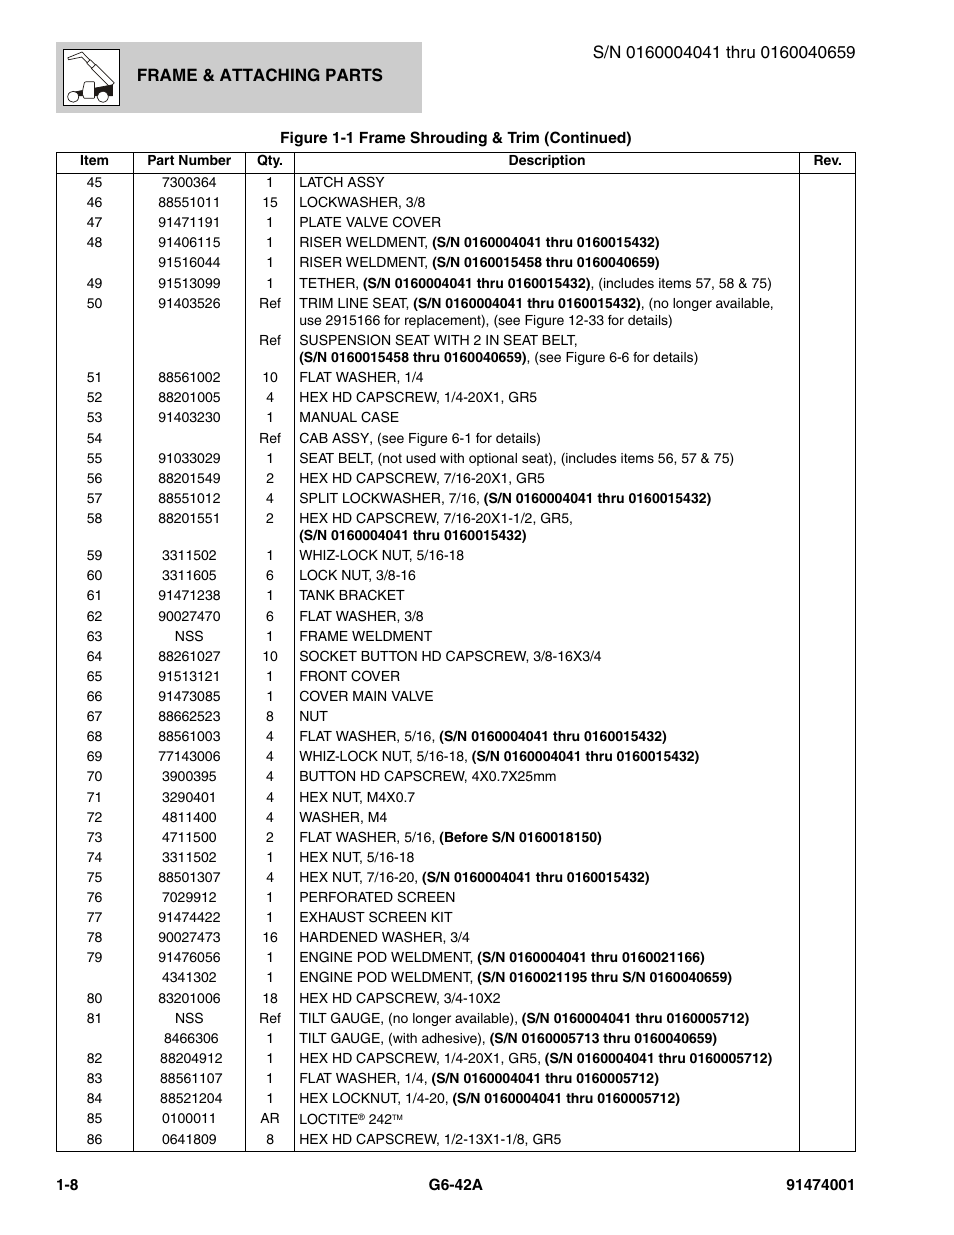 JLG G6-42A Parts Manual User Manual | Page 20 / 826